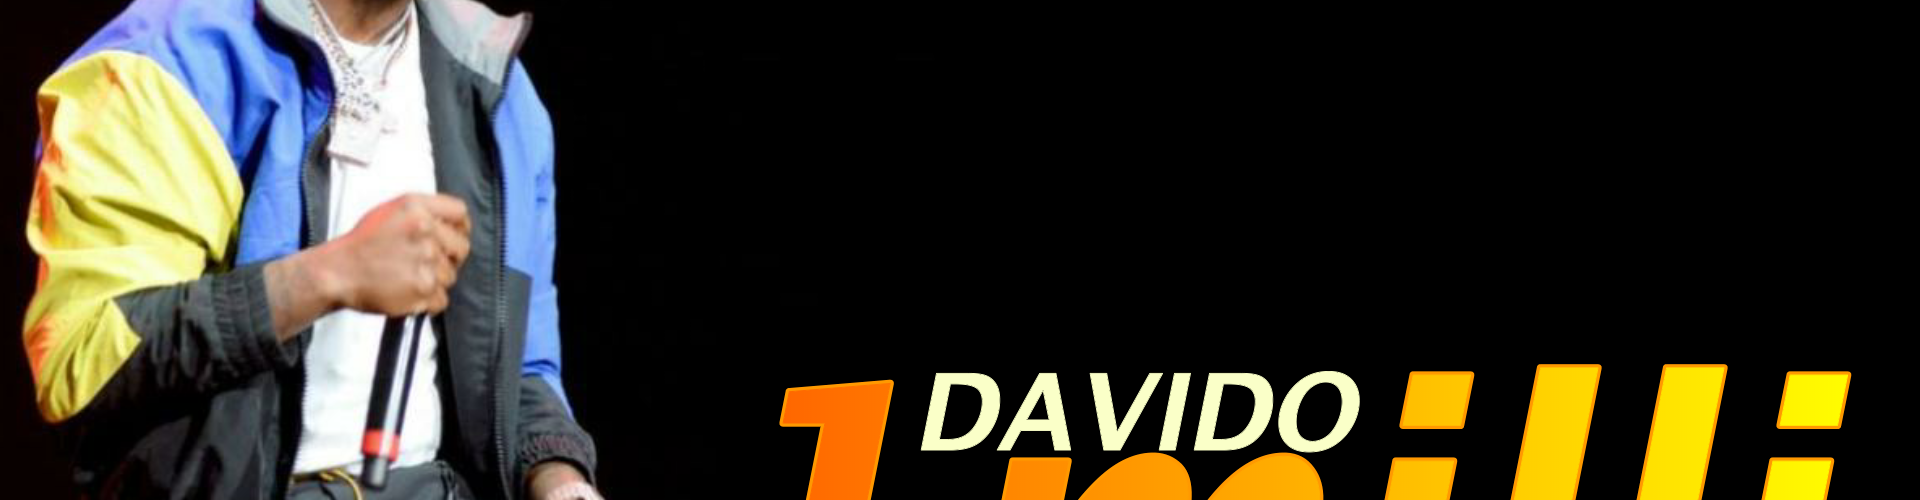 Davido - 1milli (Official Lyrics Video)